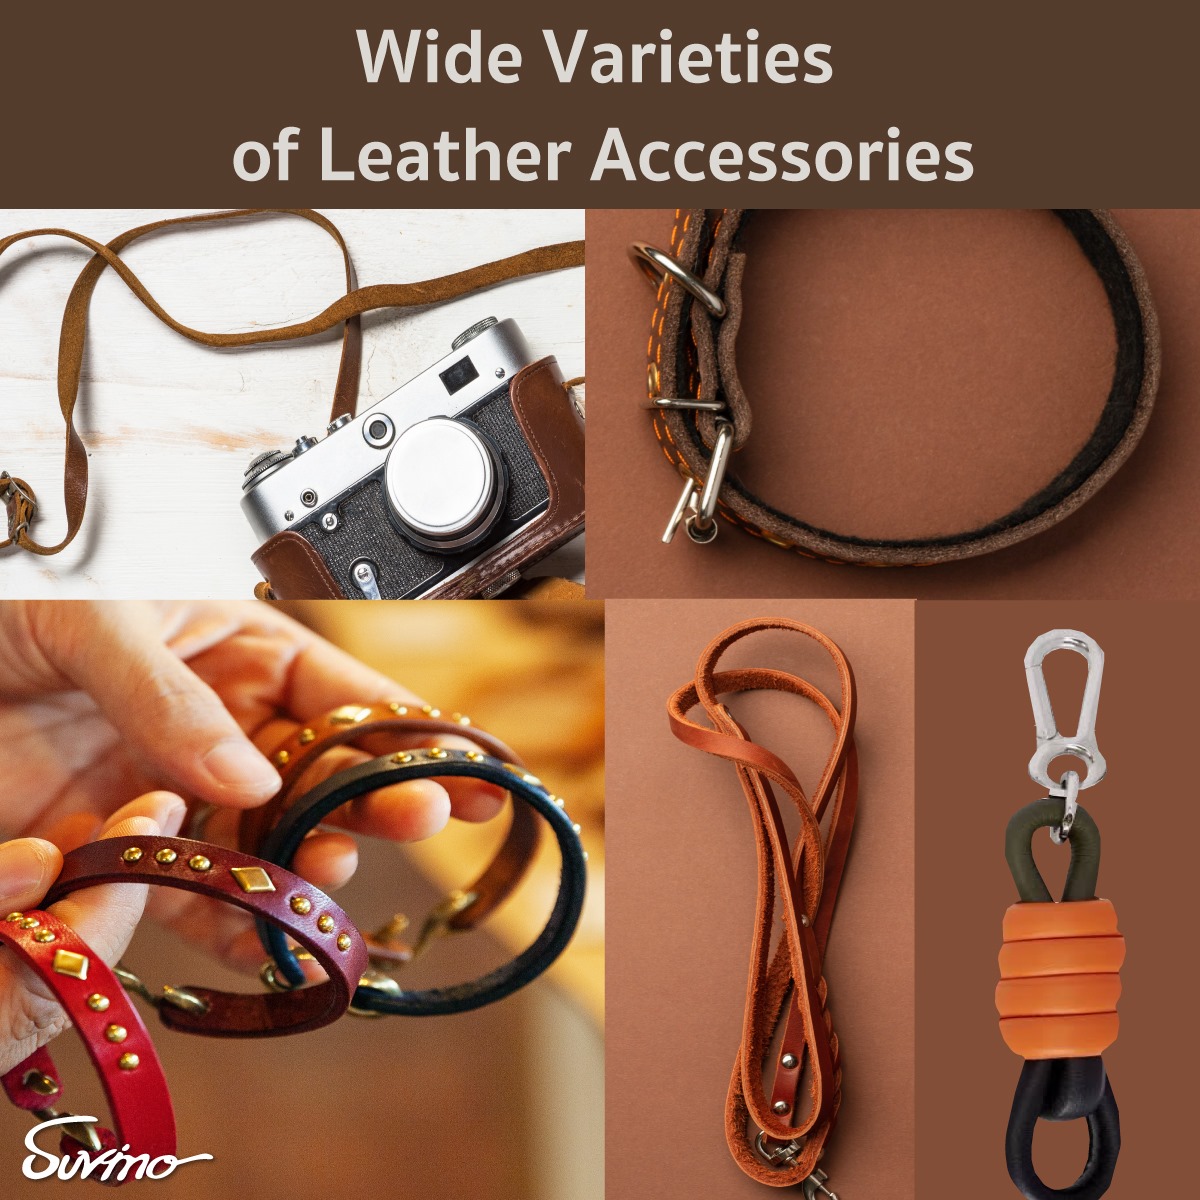 Wide Varieties of Leather